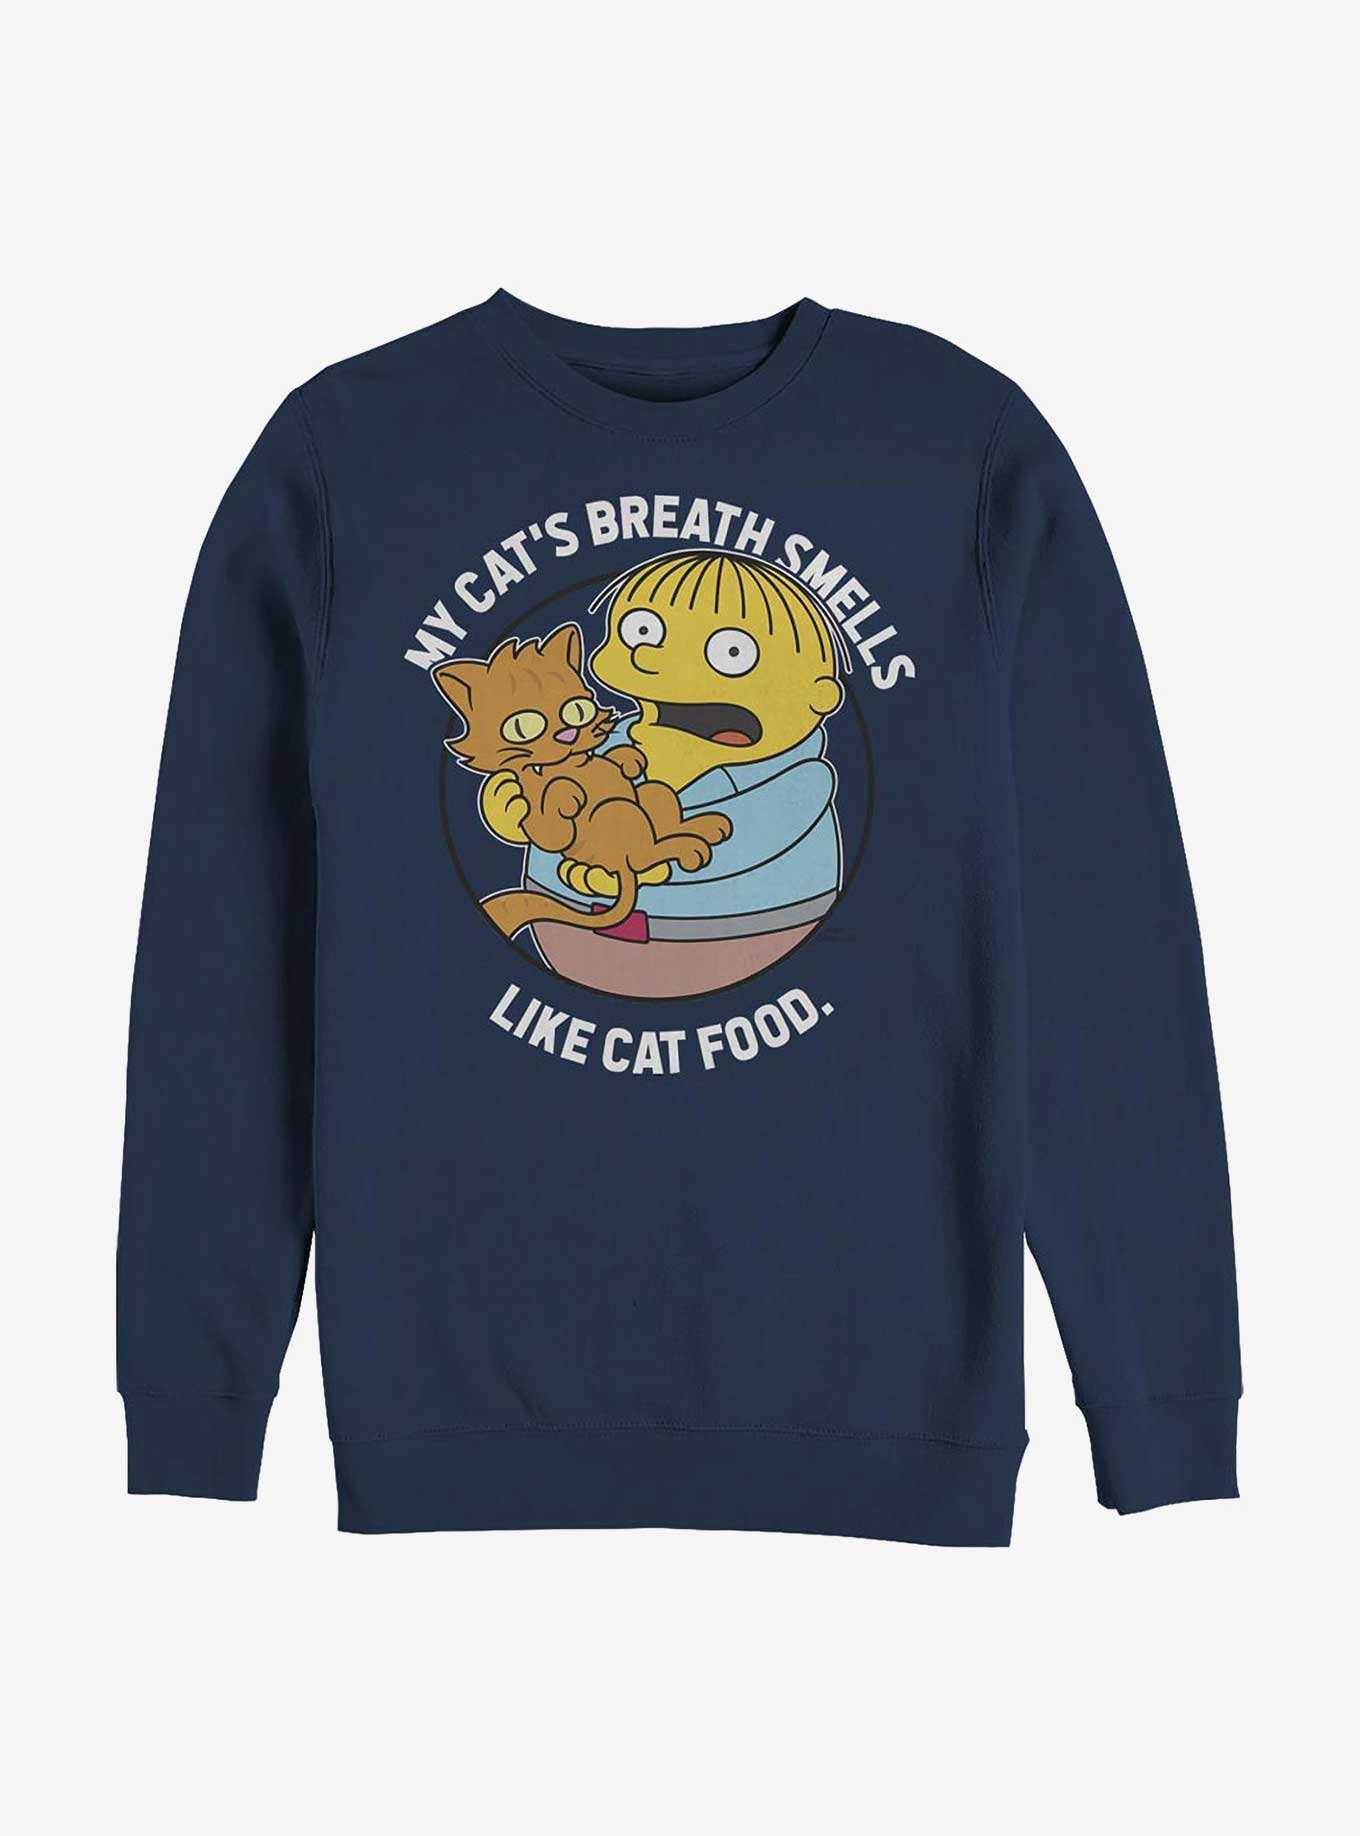 Simpsons Ralph's Cat Sweatshirt, , hi-res